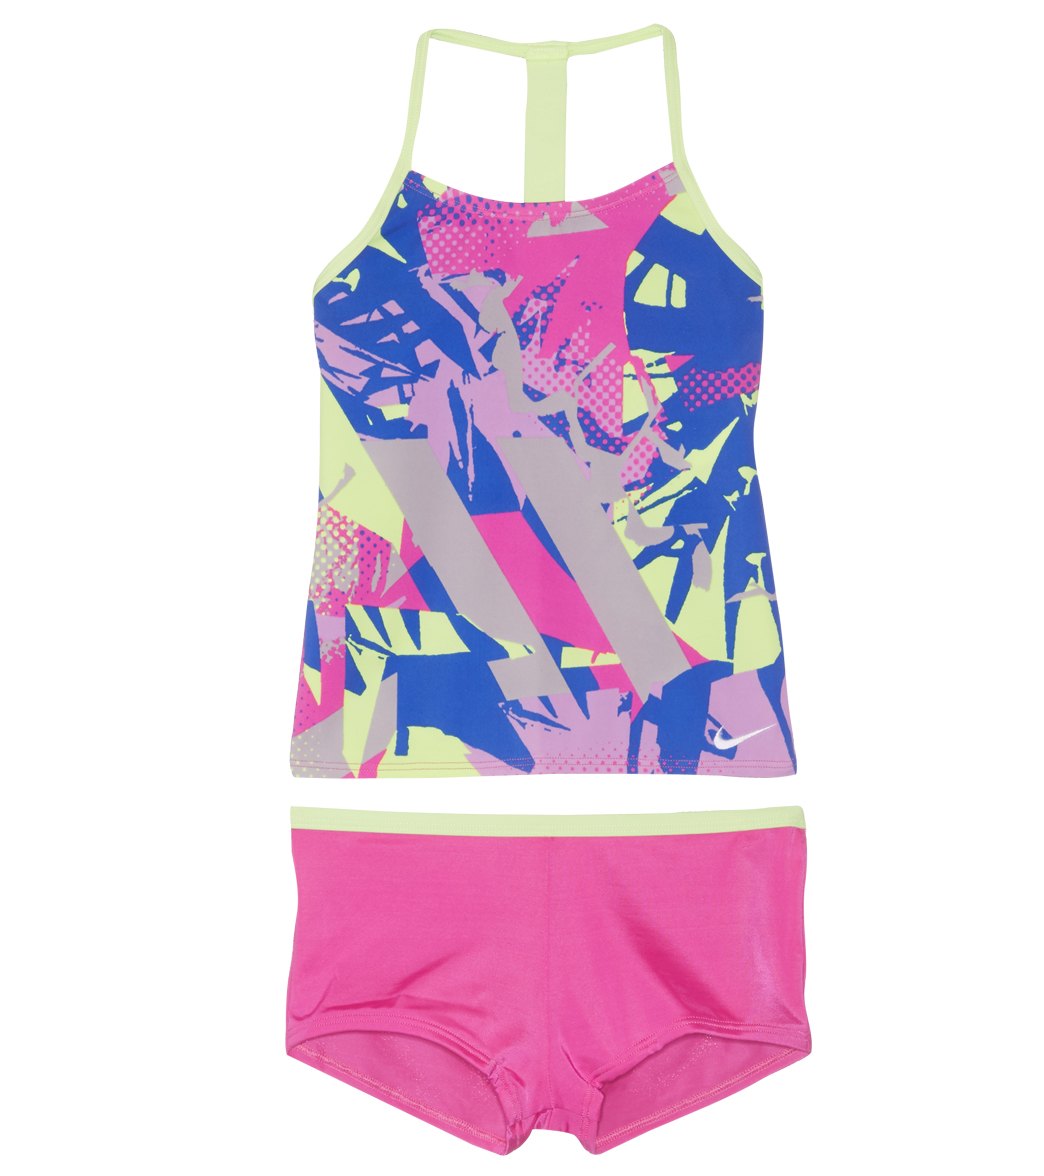 Nike Girls' Swim T-Back Tankini Set (Big Kid) at SwimOutlet.com